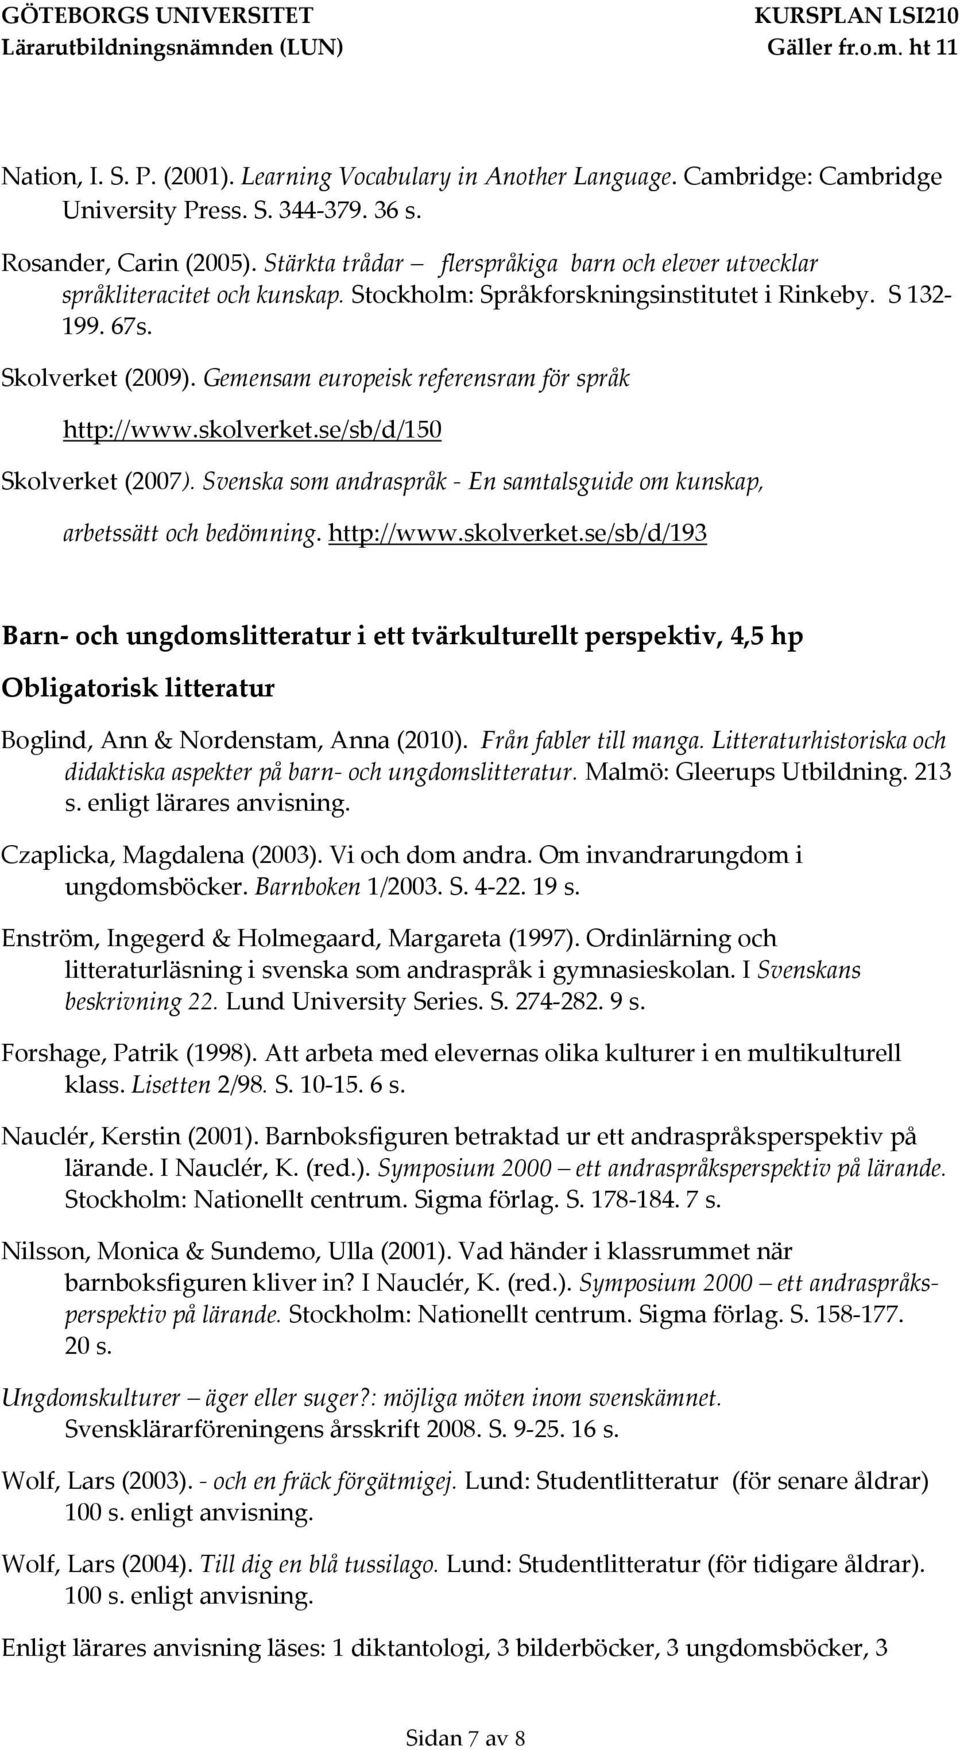 Gemensam europeisk referensram för språk http://www.skolverket.se/sb/d/150 Skolverket (2007). Svenska som andraspråk - En samtalsguide om kunskap, arbetssätt och bedömning. http://www.skolverket.se/sb/d/193 Barn- och ungdomslitteratur i ett tvärkulturellt perspektiv, 4,5 hp Boglind, Ann & Nordenstam, Anna (2010).